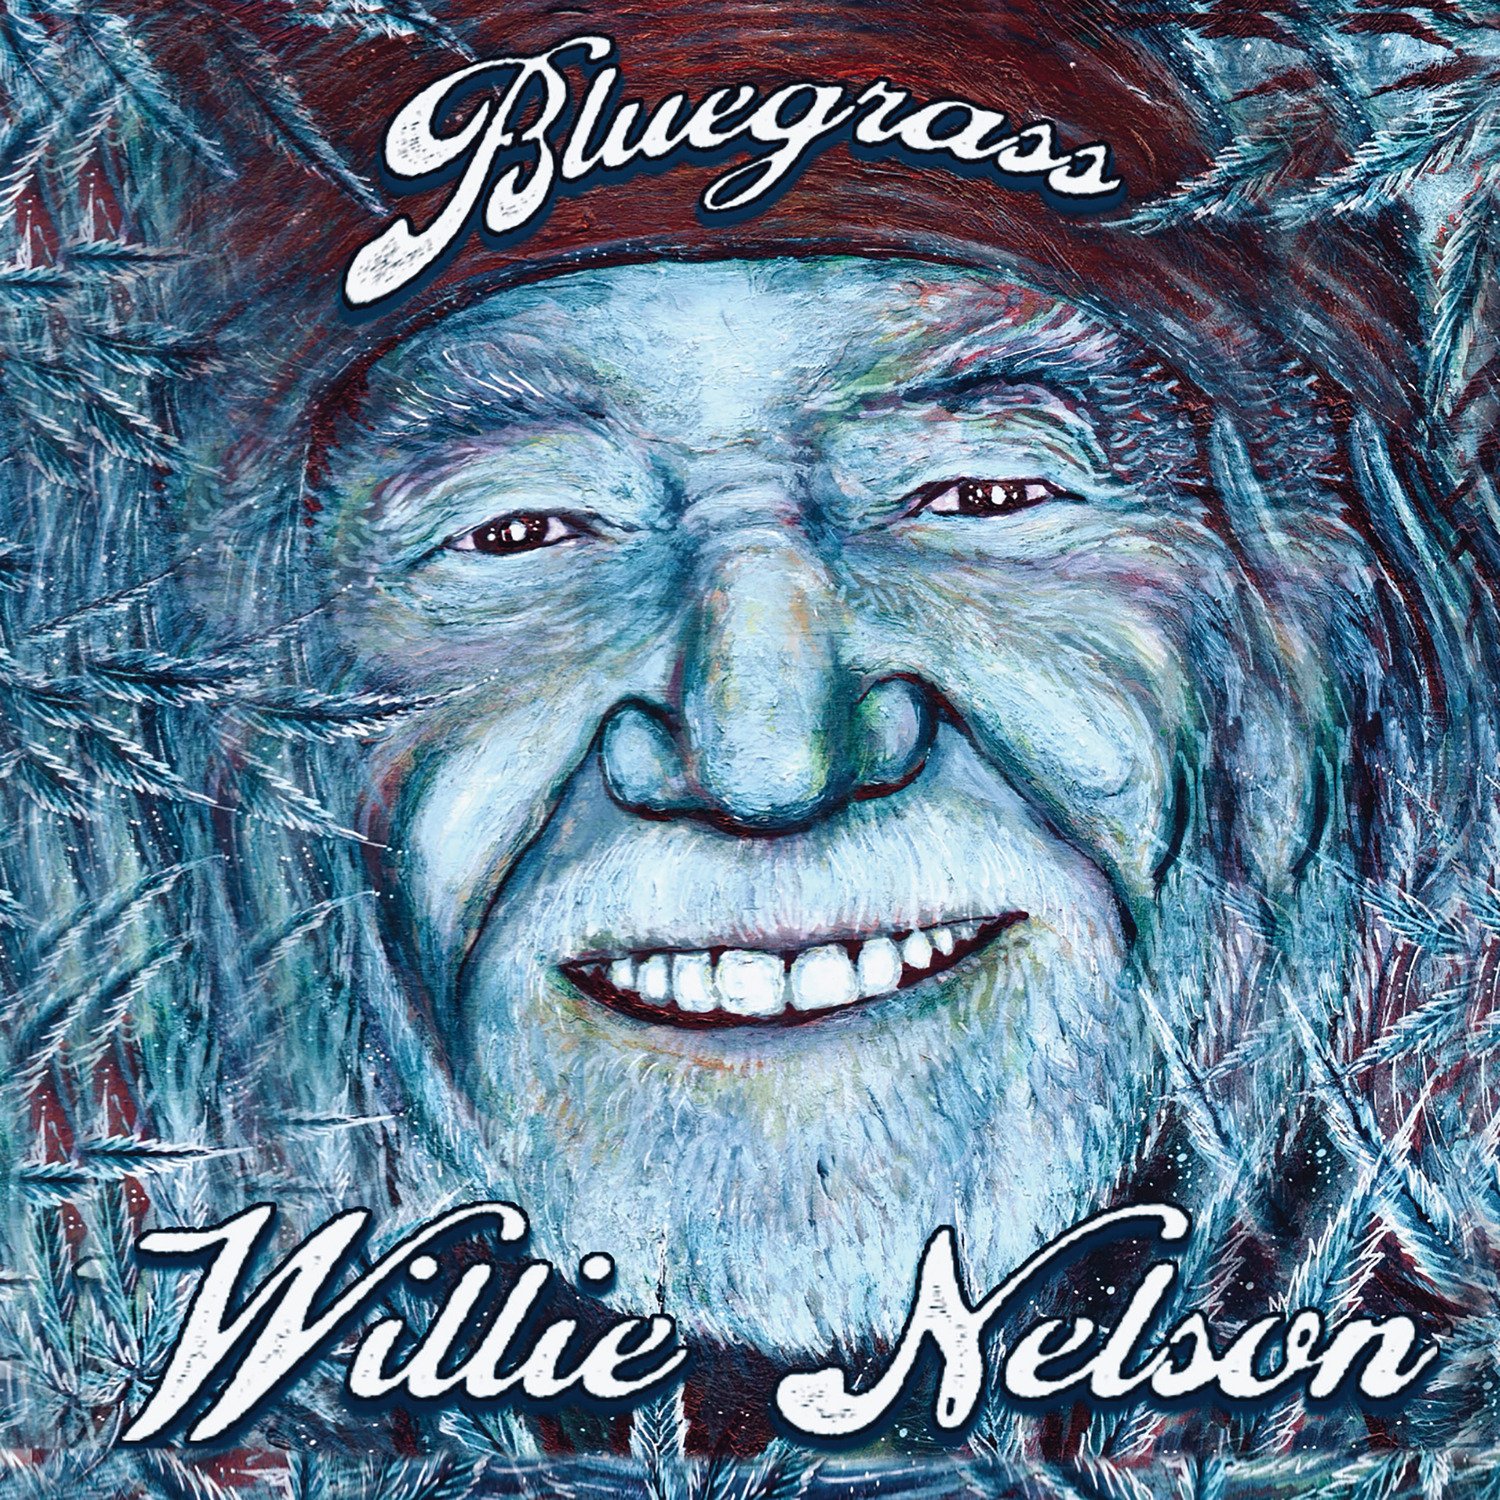 CD Shop - NELSON, WILLIE Bluegrass